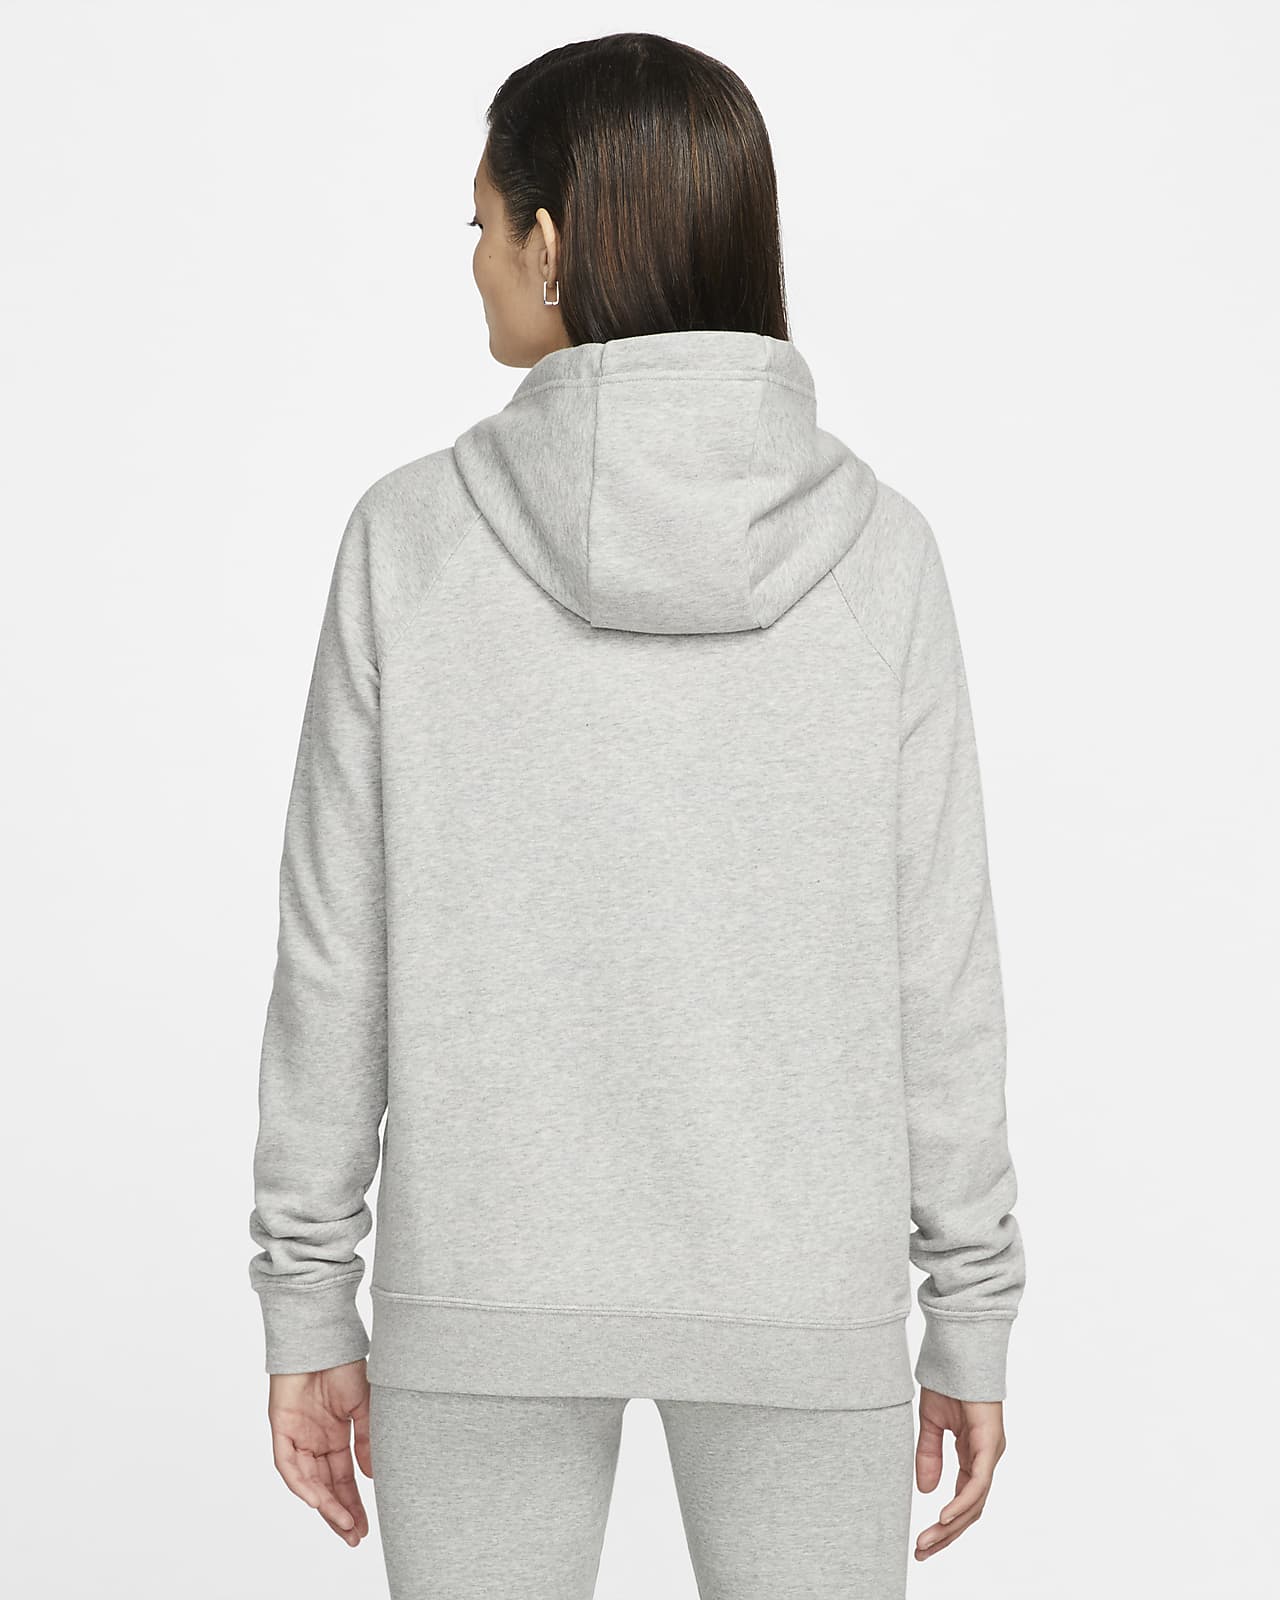 Sudadera con gorro de tejido Fleece con cierre completo para mujer Sportswear Essential. Nike MX